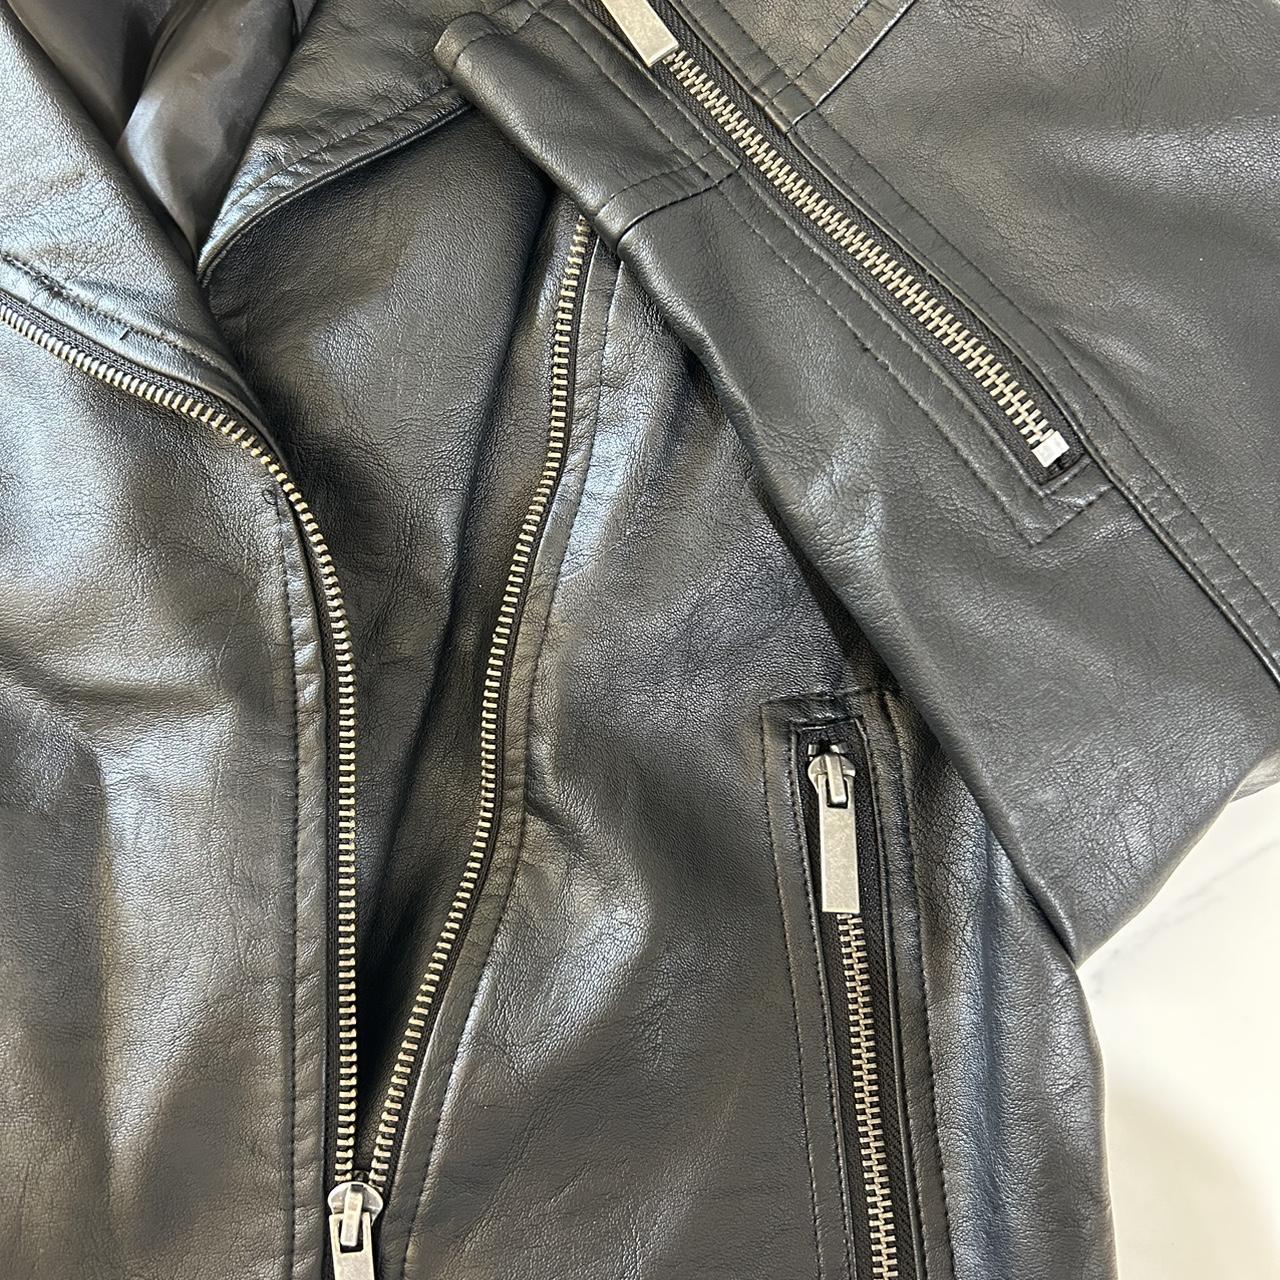 AVA & VIV leather jacket FREE SHIPPING hardly worn-... - Depop